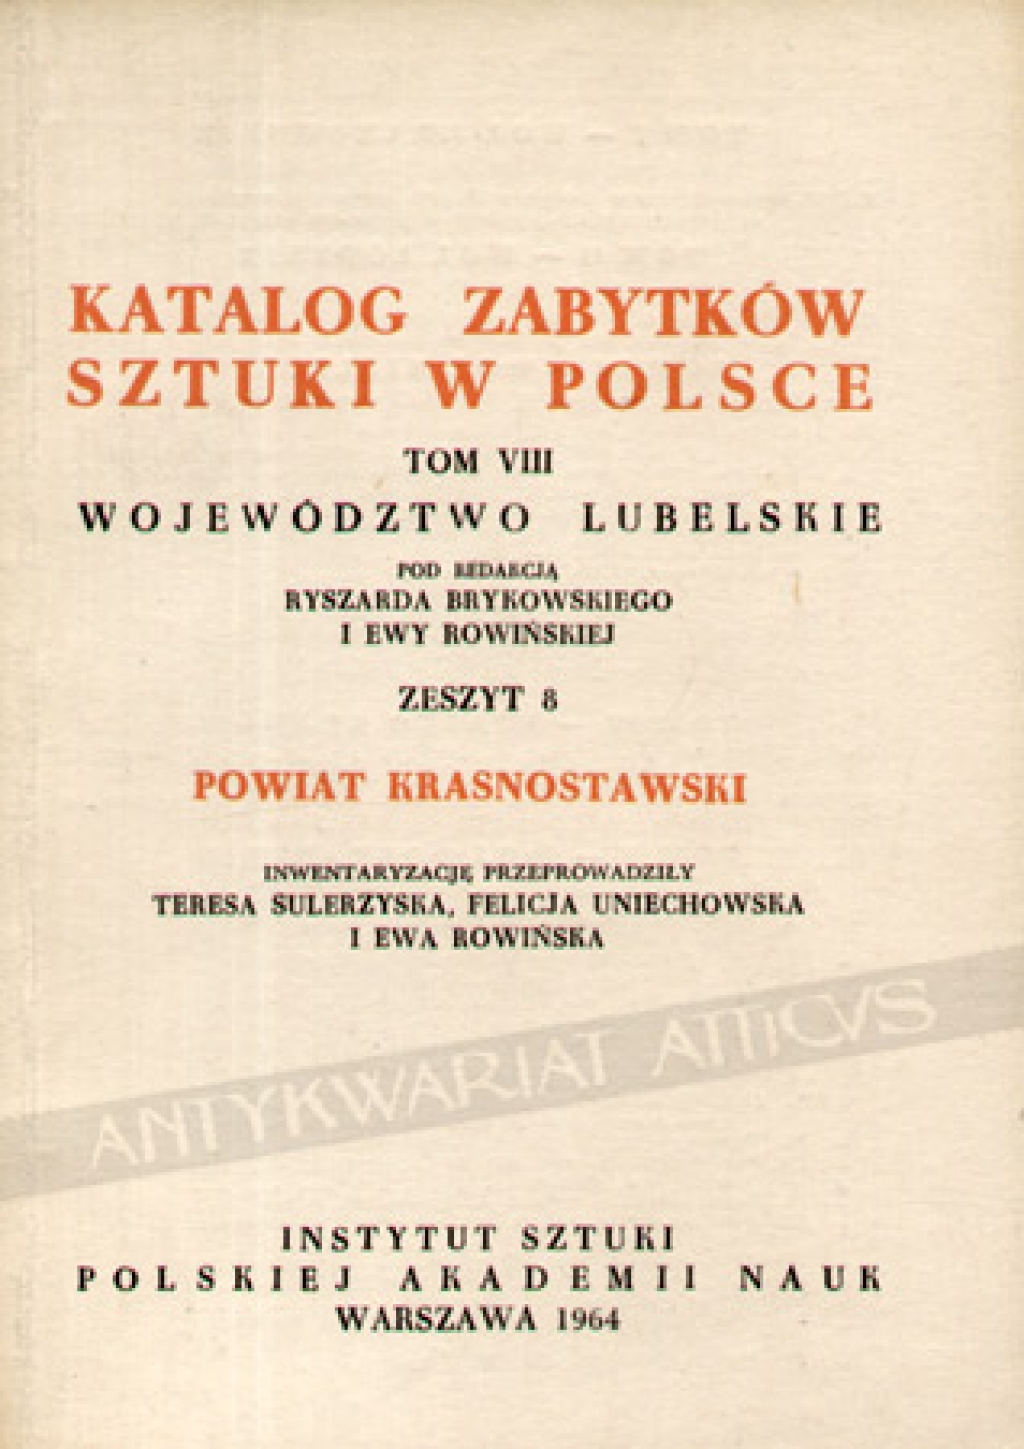 Katalog zabytków sztuki w Polsce, t. VIII. Wojewódzwtwo Lubelskie. Zeszyt 8, powiat krasnostawski 